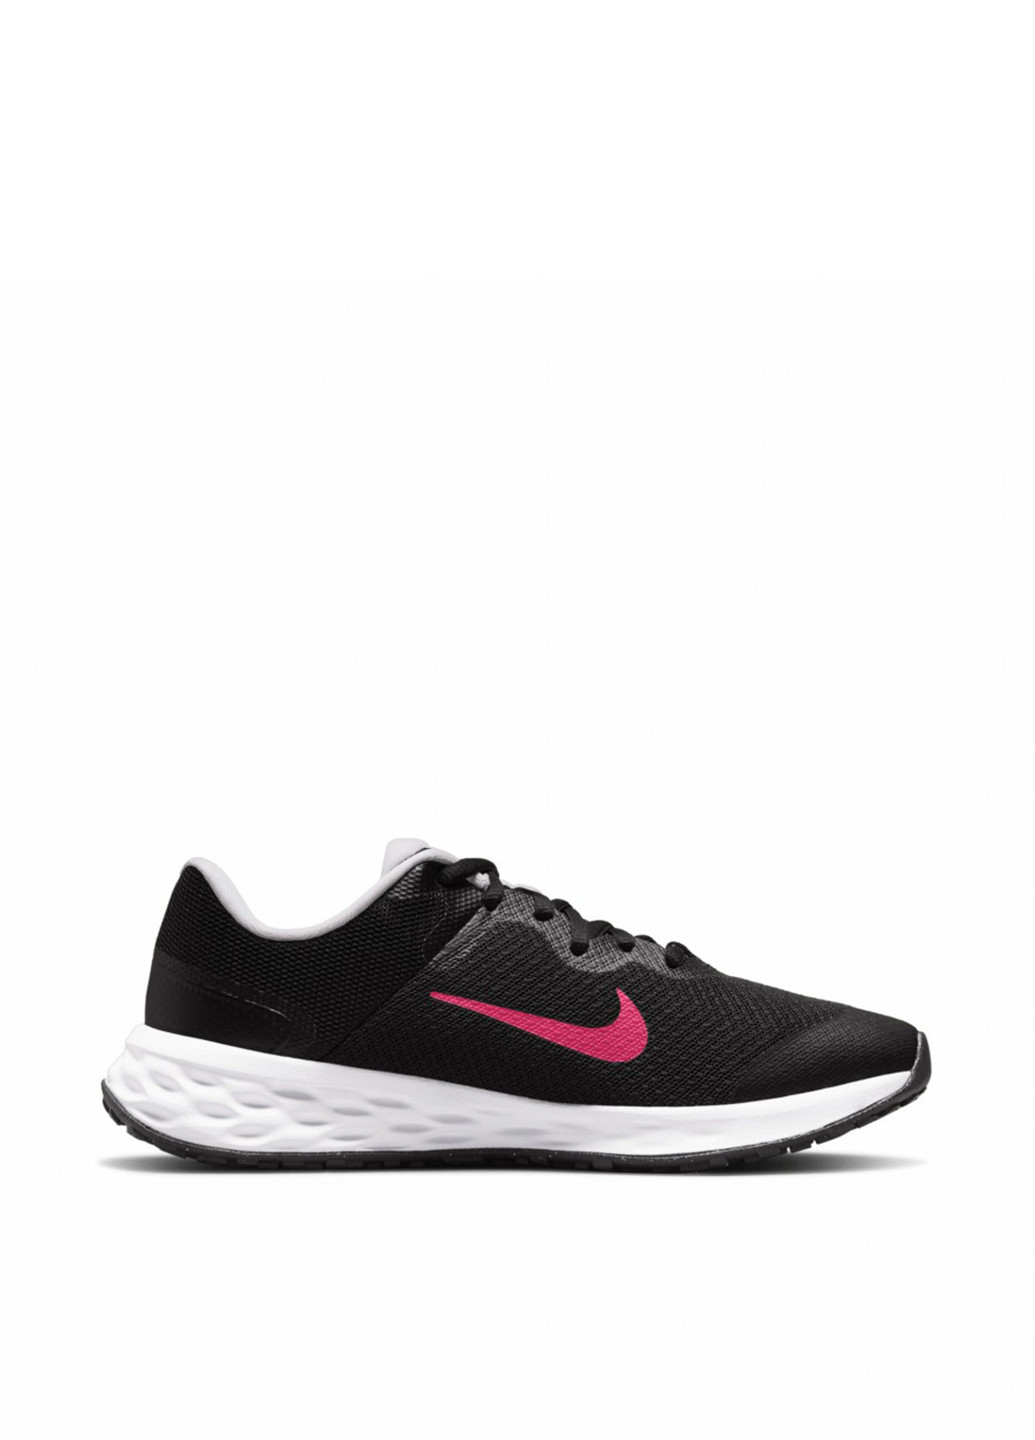 Черные всесезонные кроссовки Nike REVOLUTION 6 NN (GS)